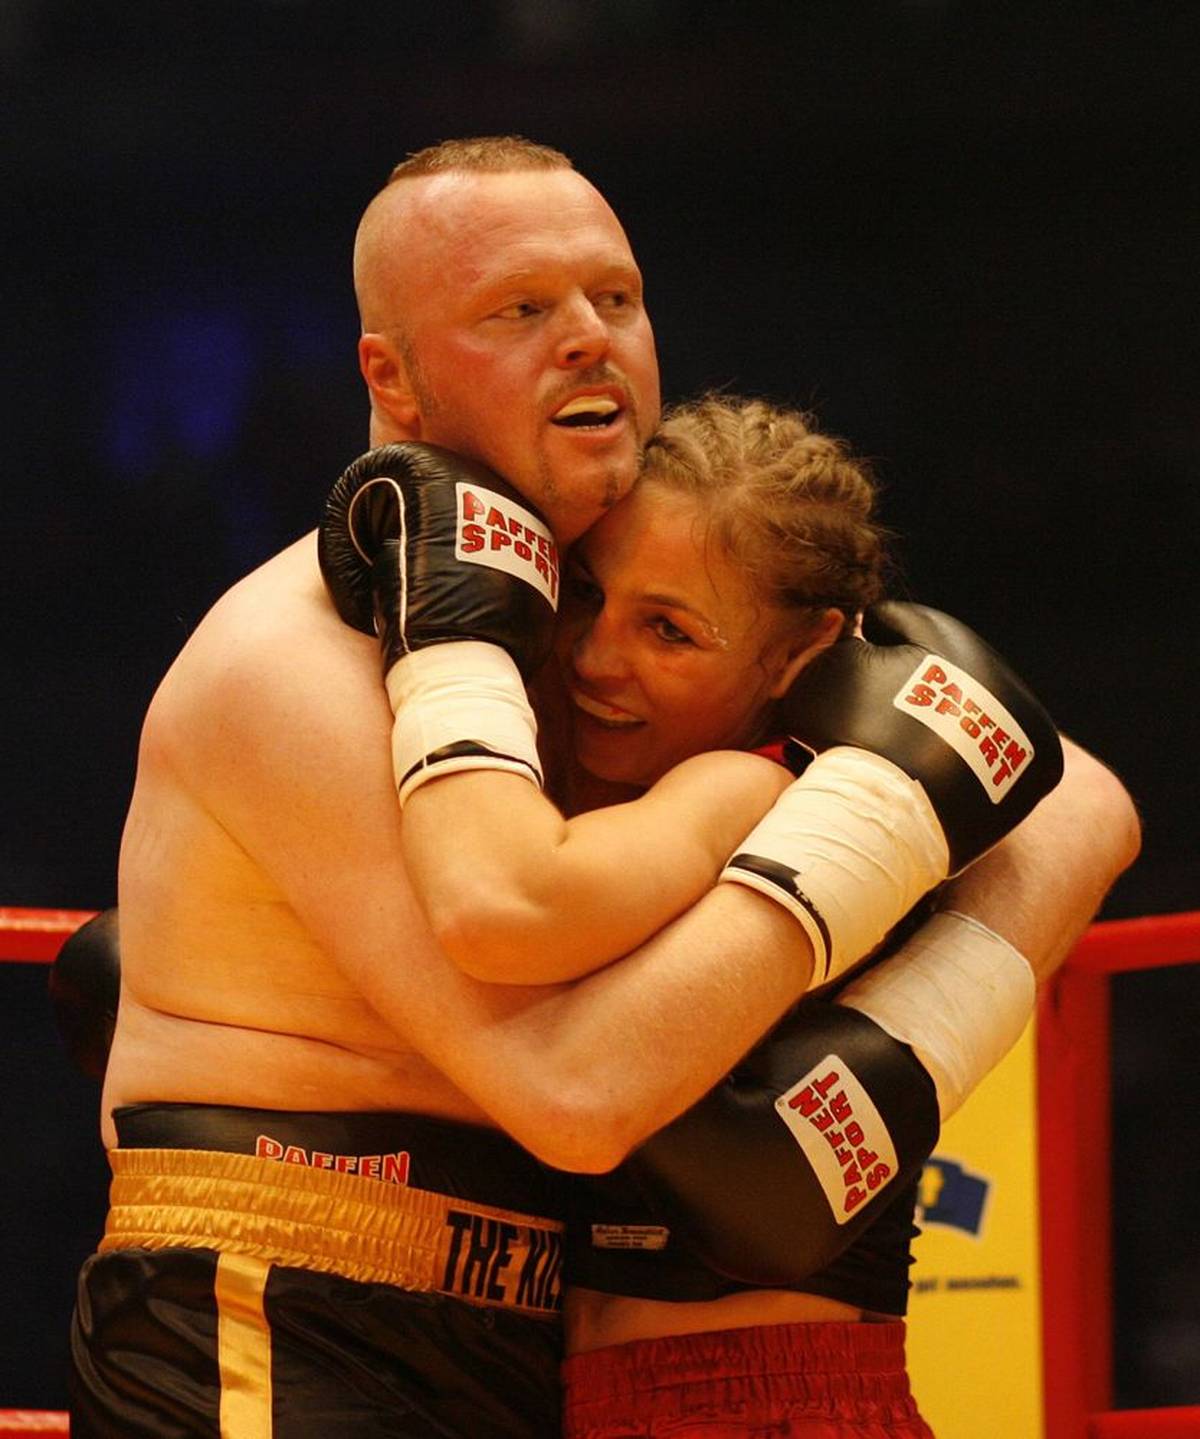 Stefan Raab y Regina Halmich en su segundo combate de boxeo en Colonia en 2007